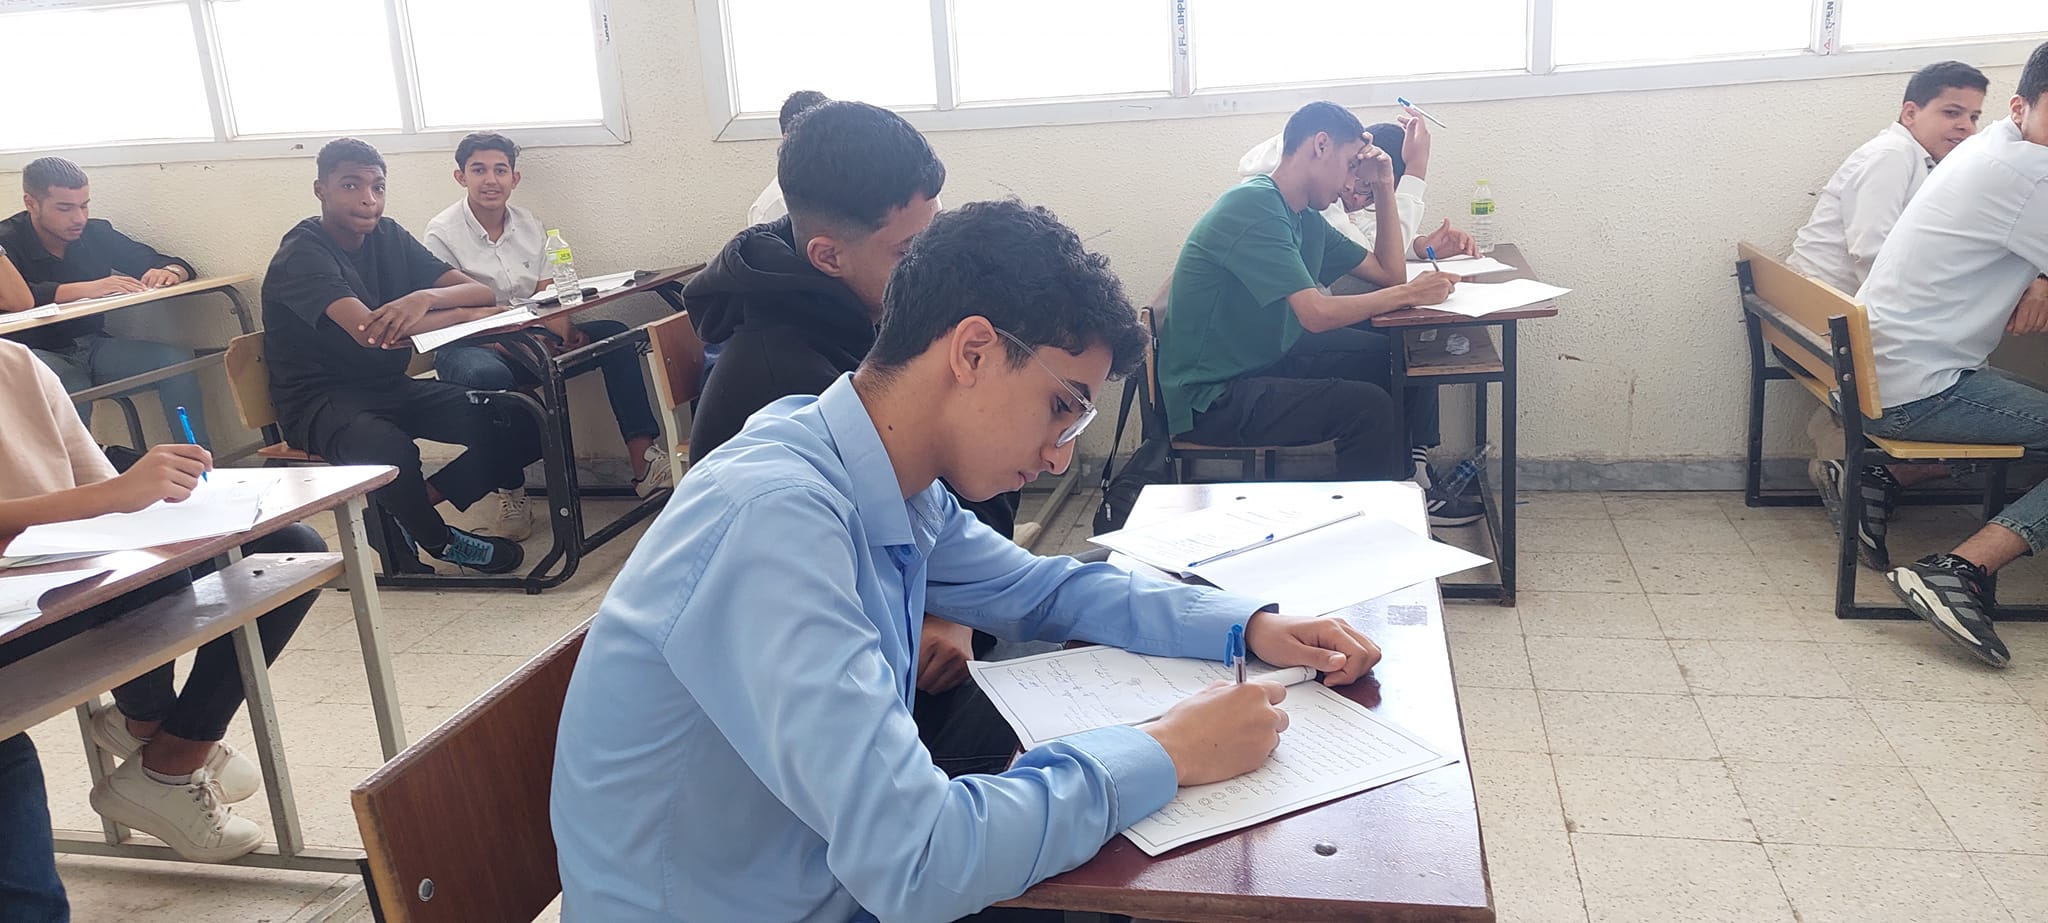 بدء امتحانات الدور الأول لشهادة إتمام مرحلة التعليم الاساسي بكامل التراب الليبي .